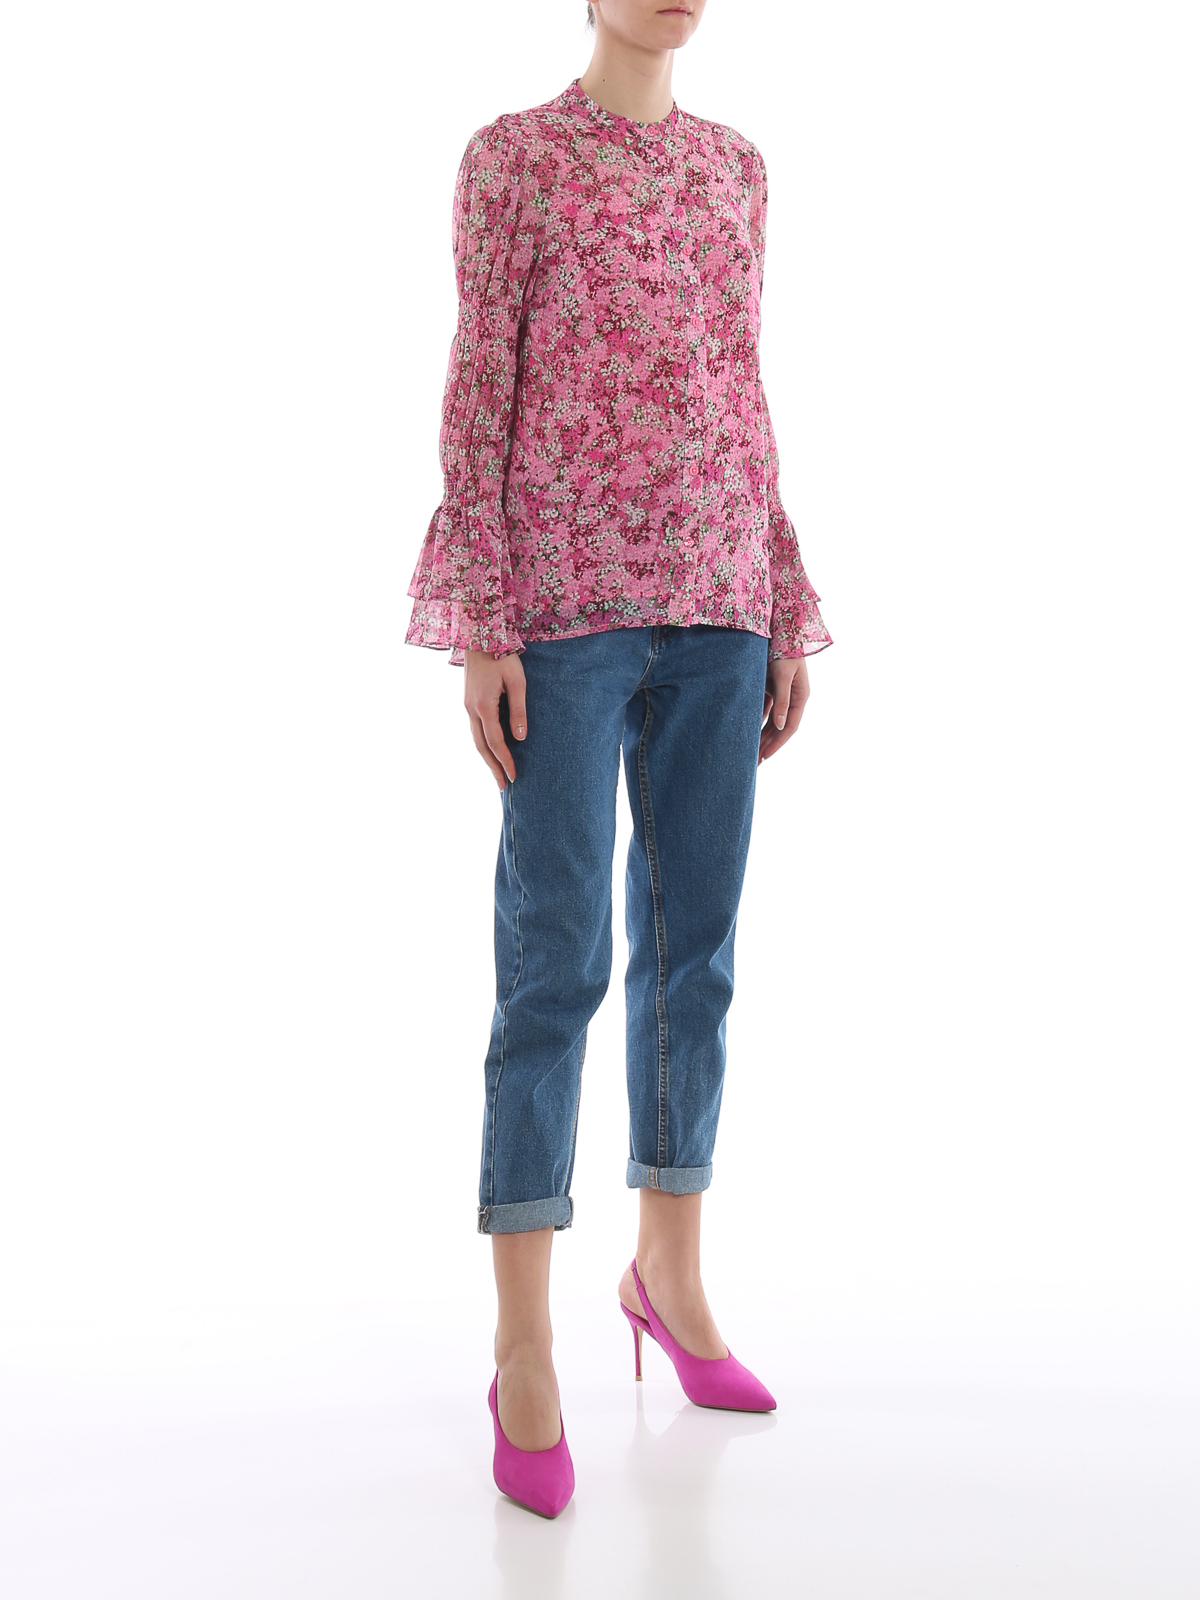 Blouses Michael Kors - Floral print chiffon blouse - MS94LK8AXE654